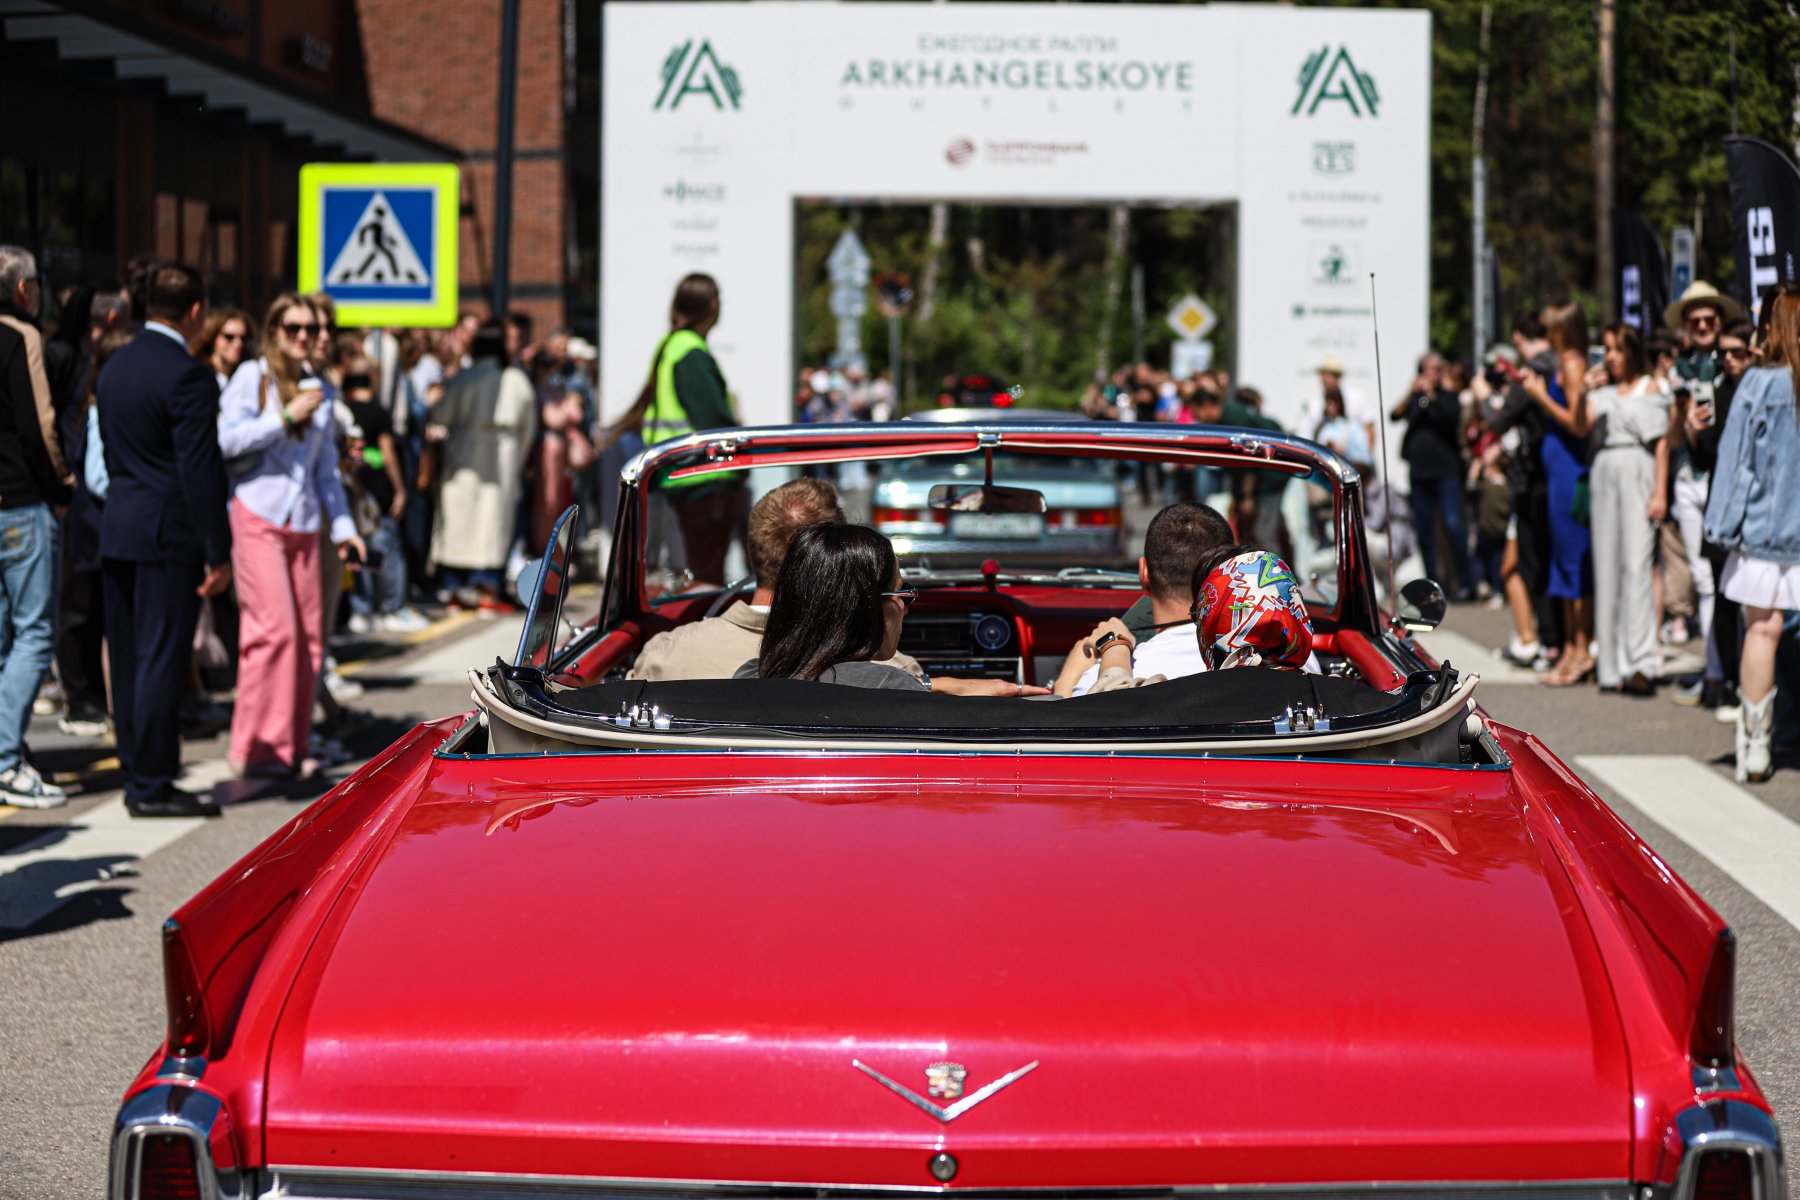 Ралли классических авто в стиле Dolce Vita состоялось в торговом комплексе «Архангельское Аутлет» 